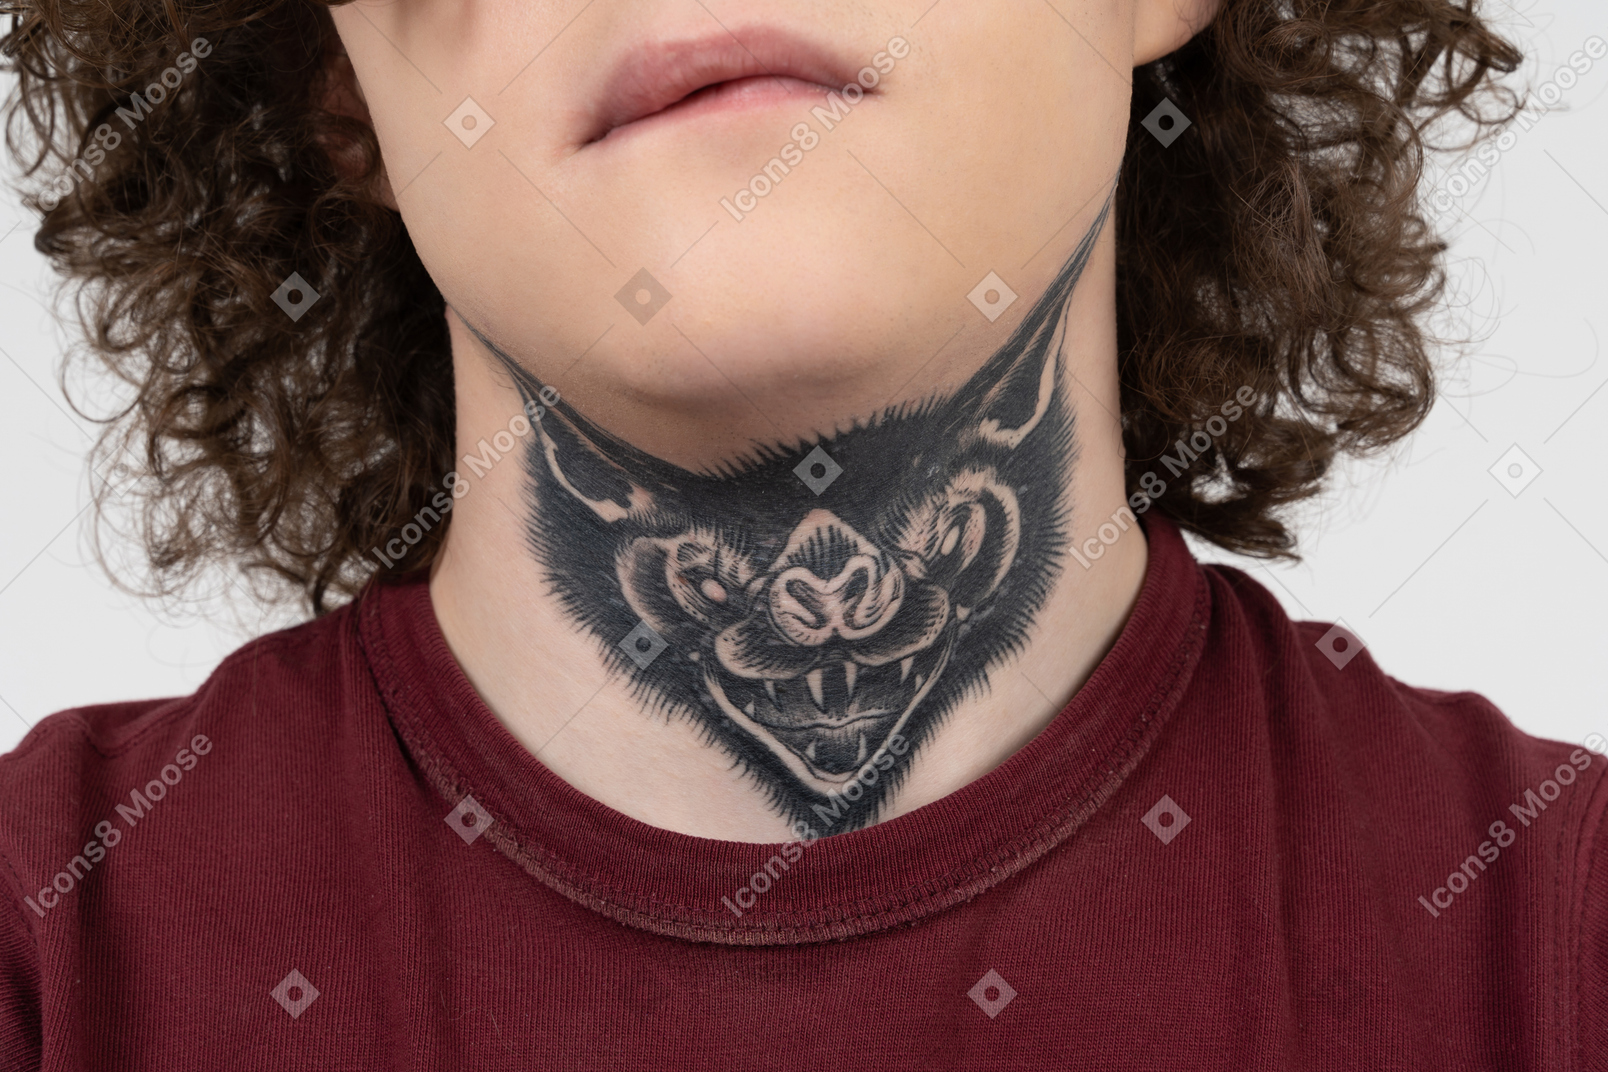 Татуировки на лицах николаевских подростков. Мнение тату-мастера и психолога | Павло Казар'ян